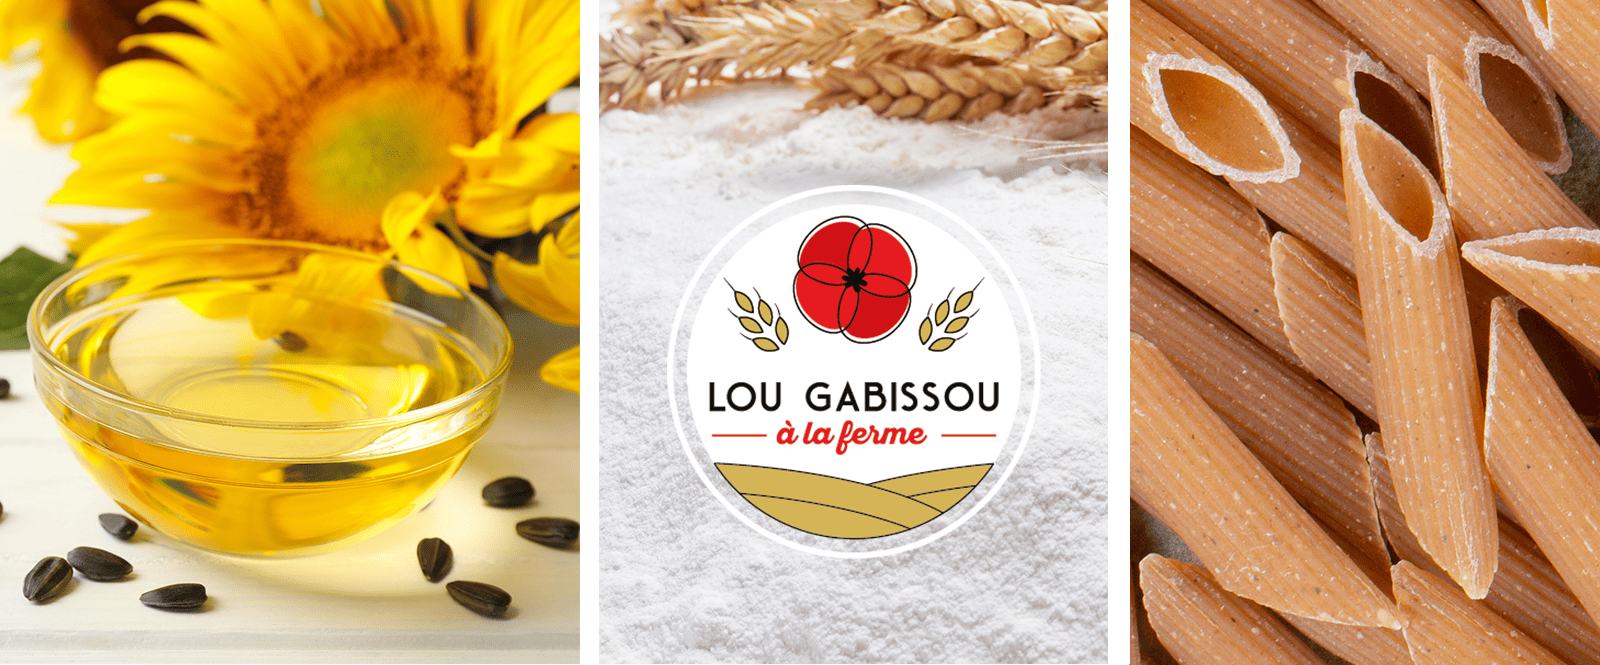 Lou gabissou blé, agence de communication Limoges